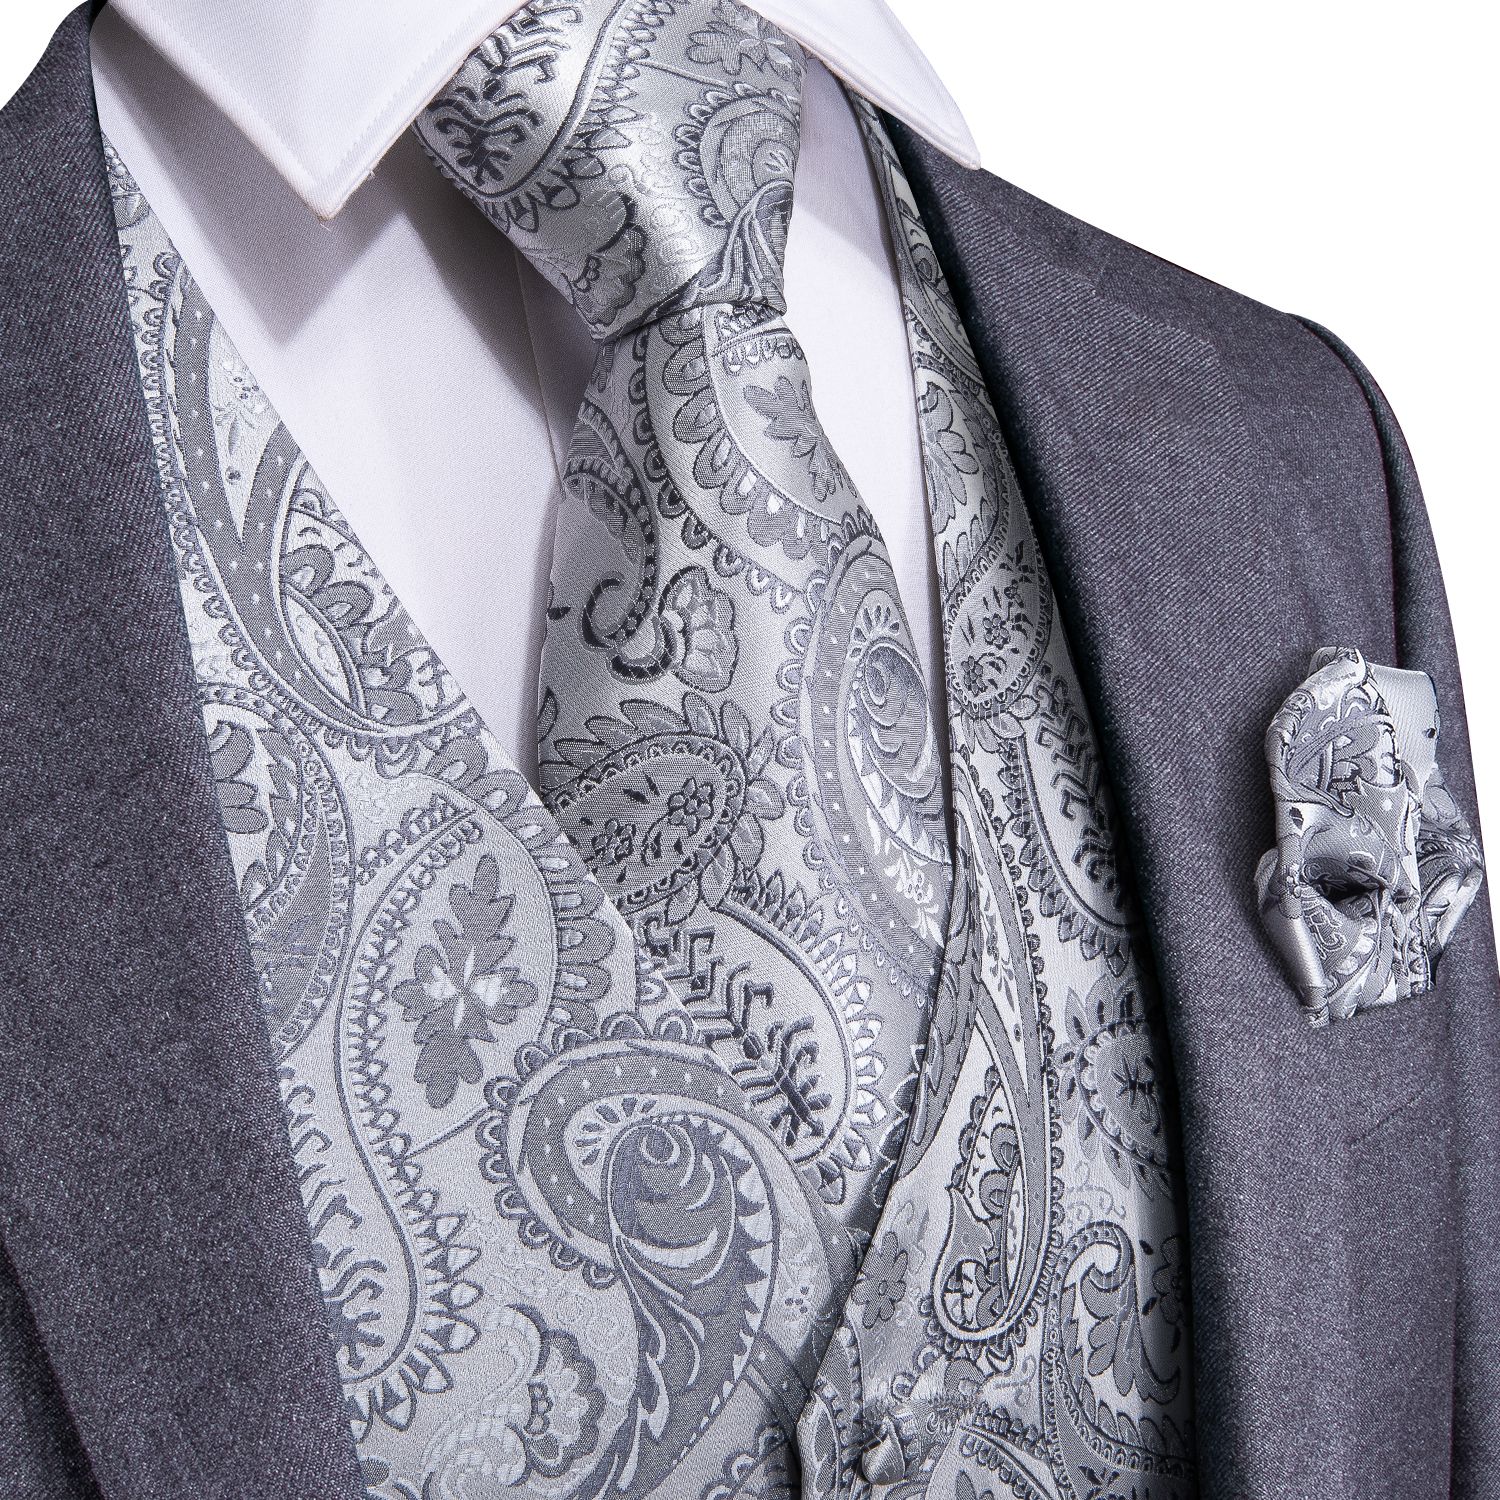 ENLISION Cheque clasico Jacquard Chaleco de los hombres Corbata de bolsillo Conjunto de traje de chaleco de color solido